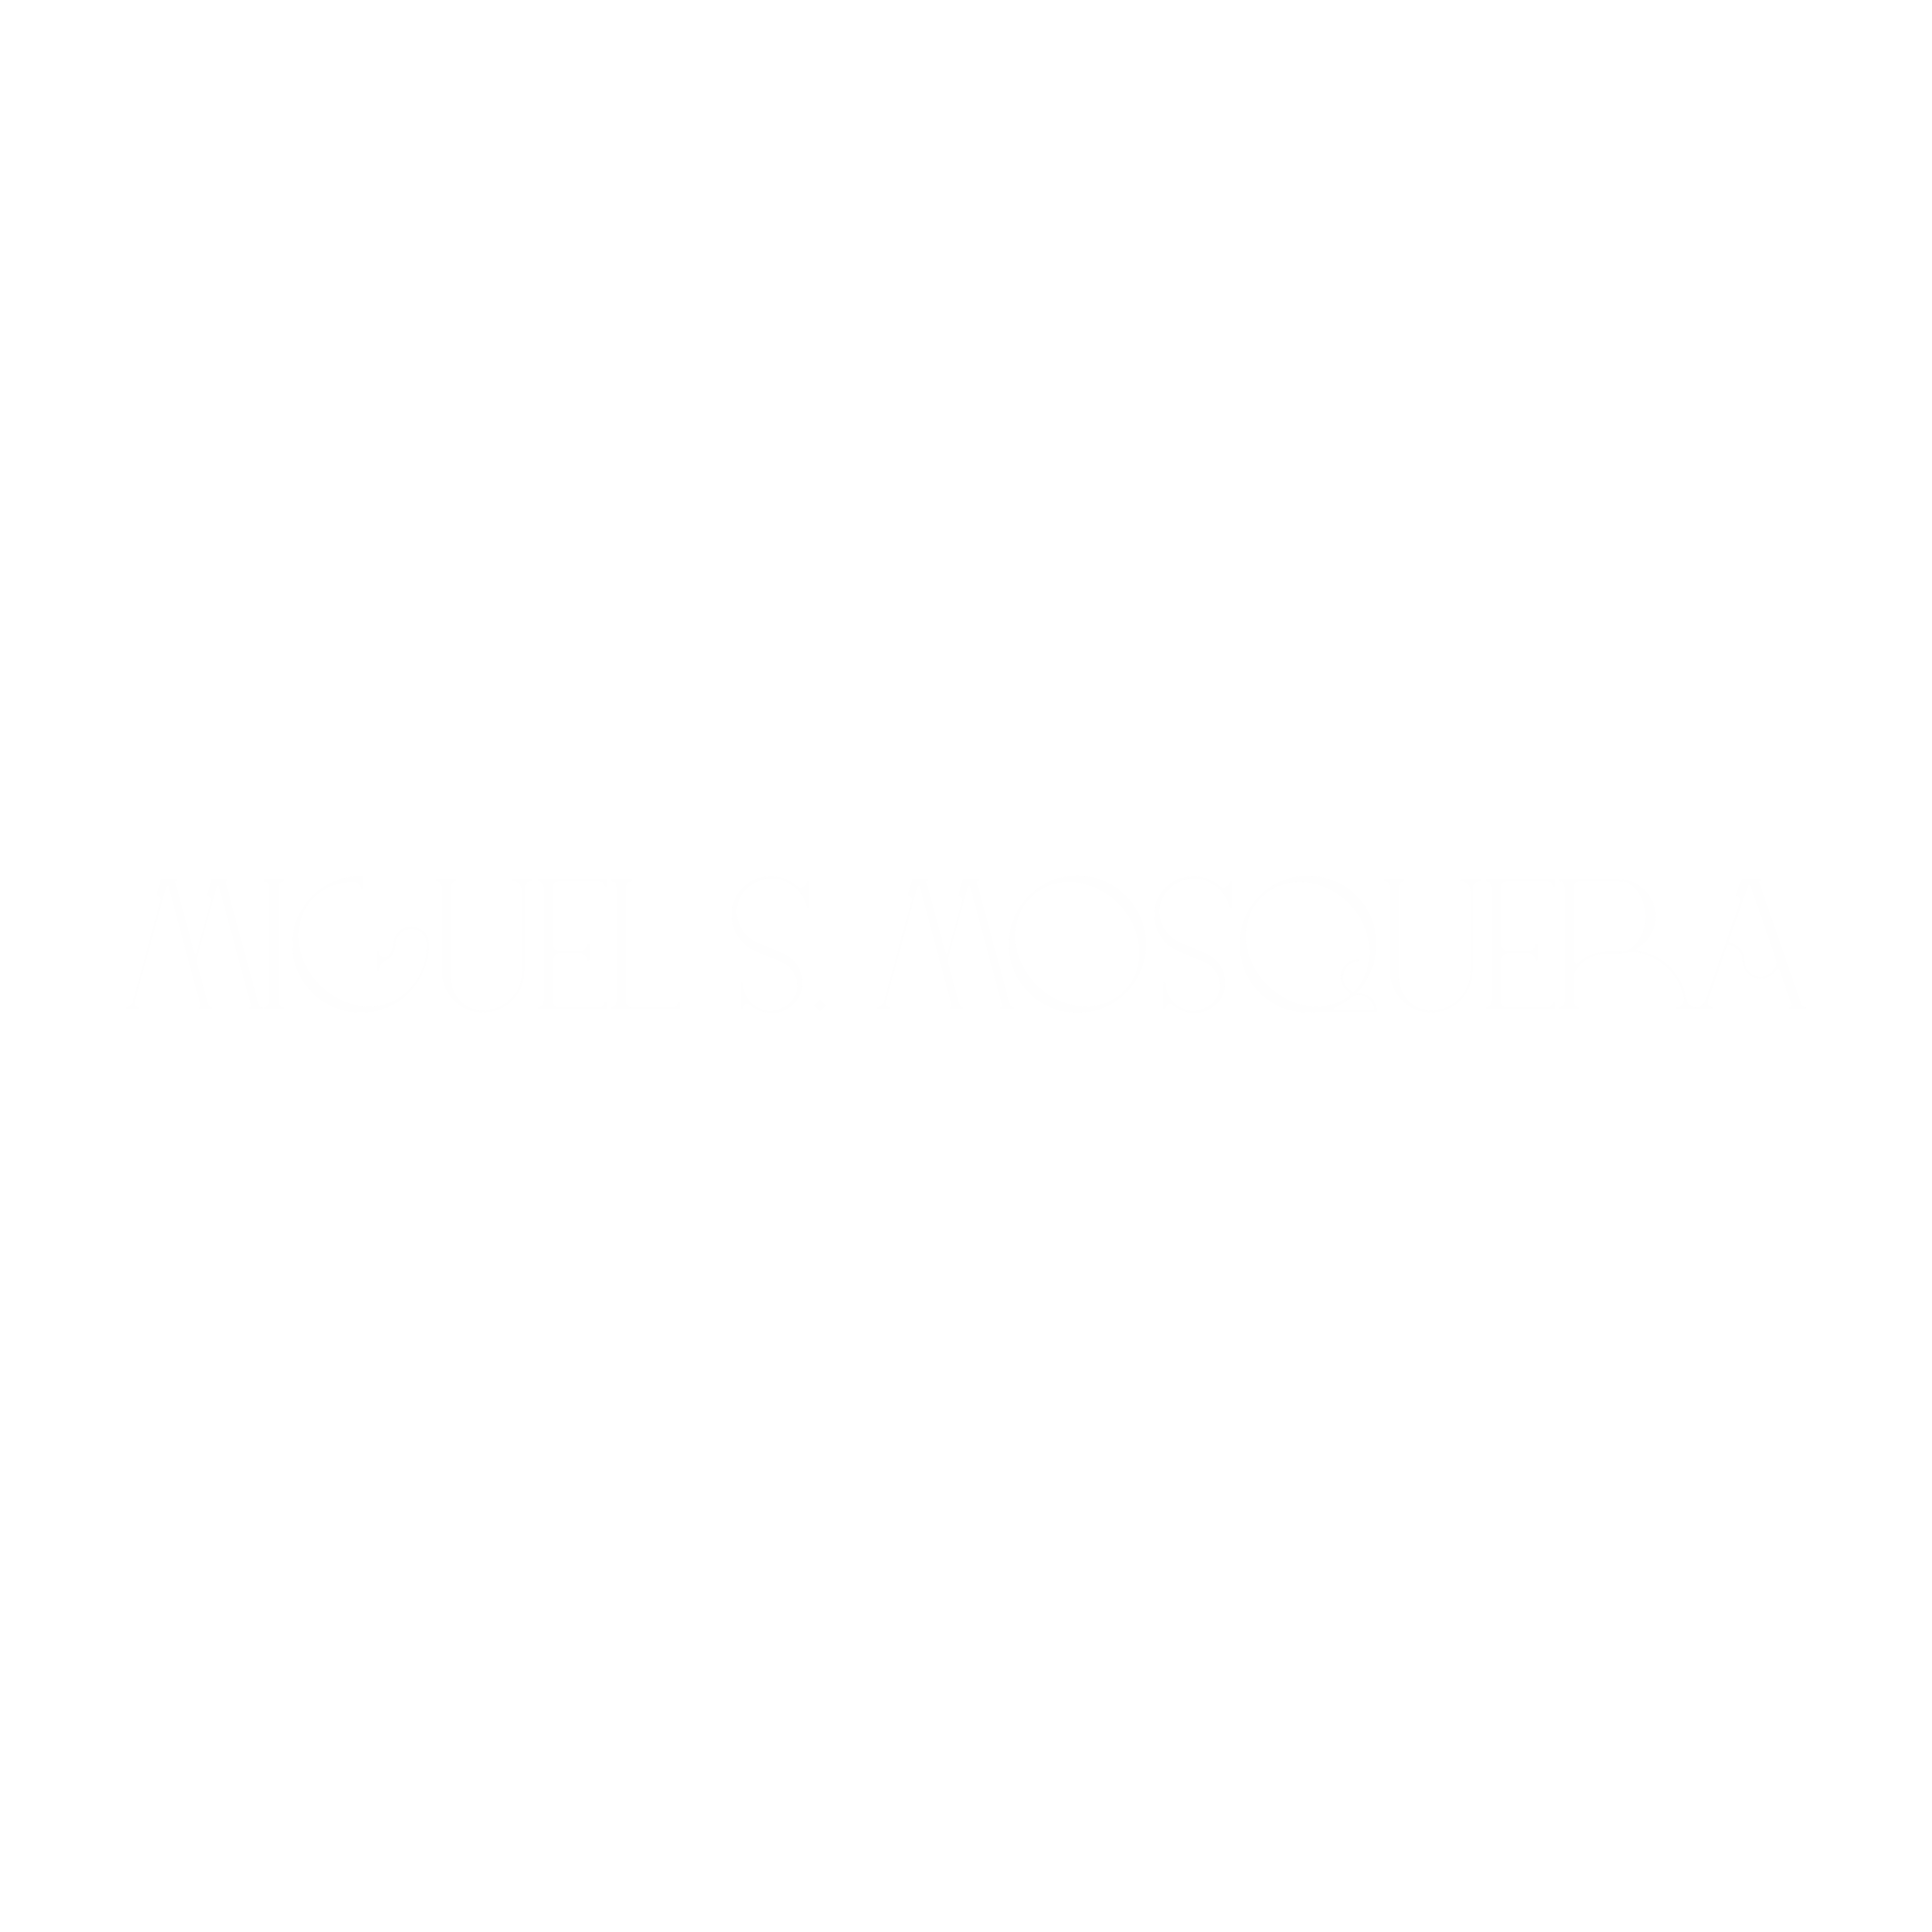 Miguel Sánchez Mosquera